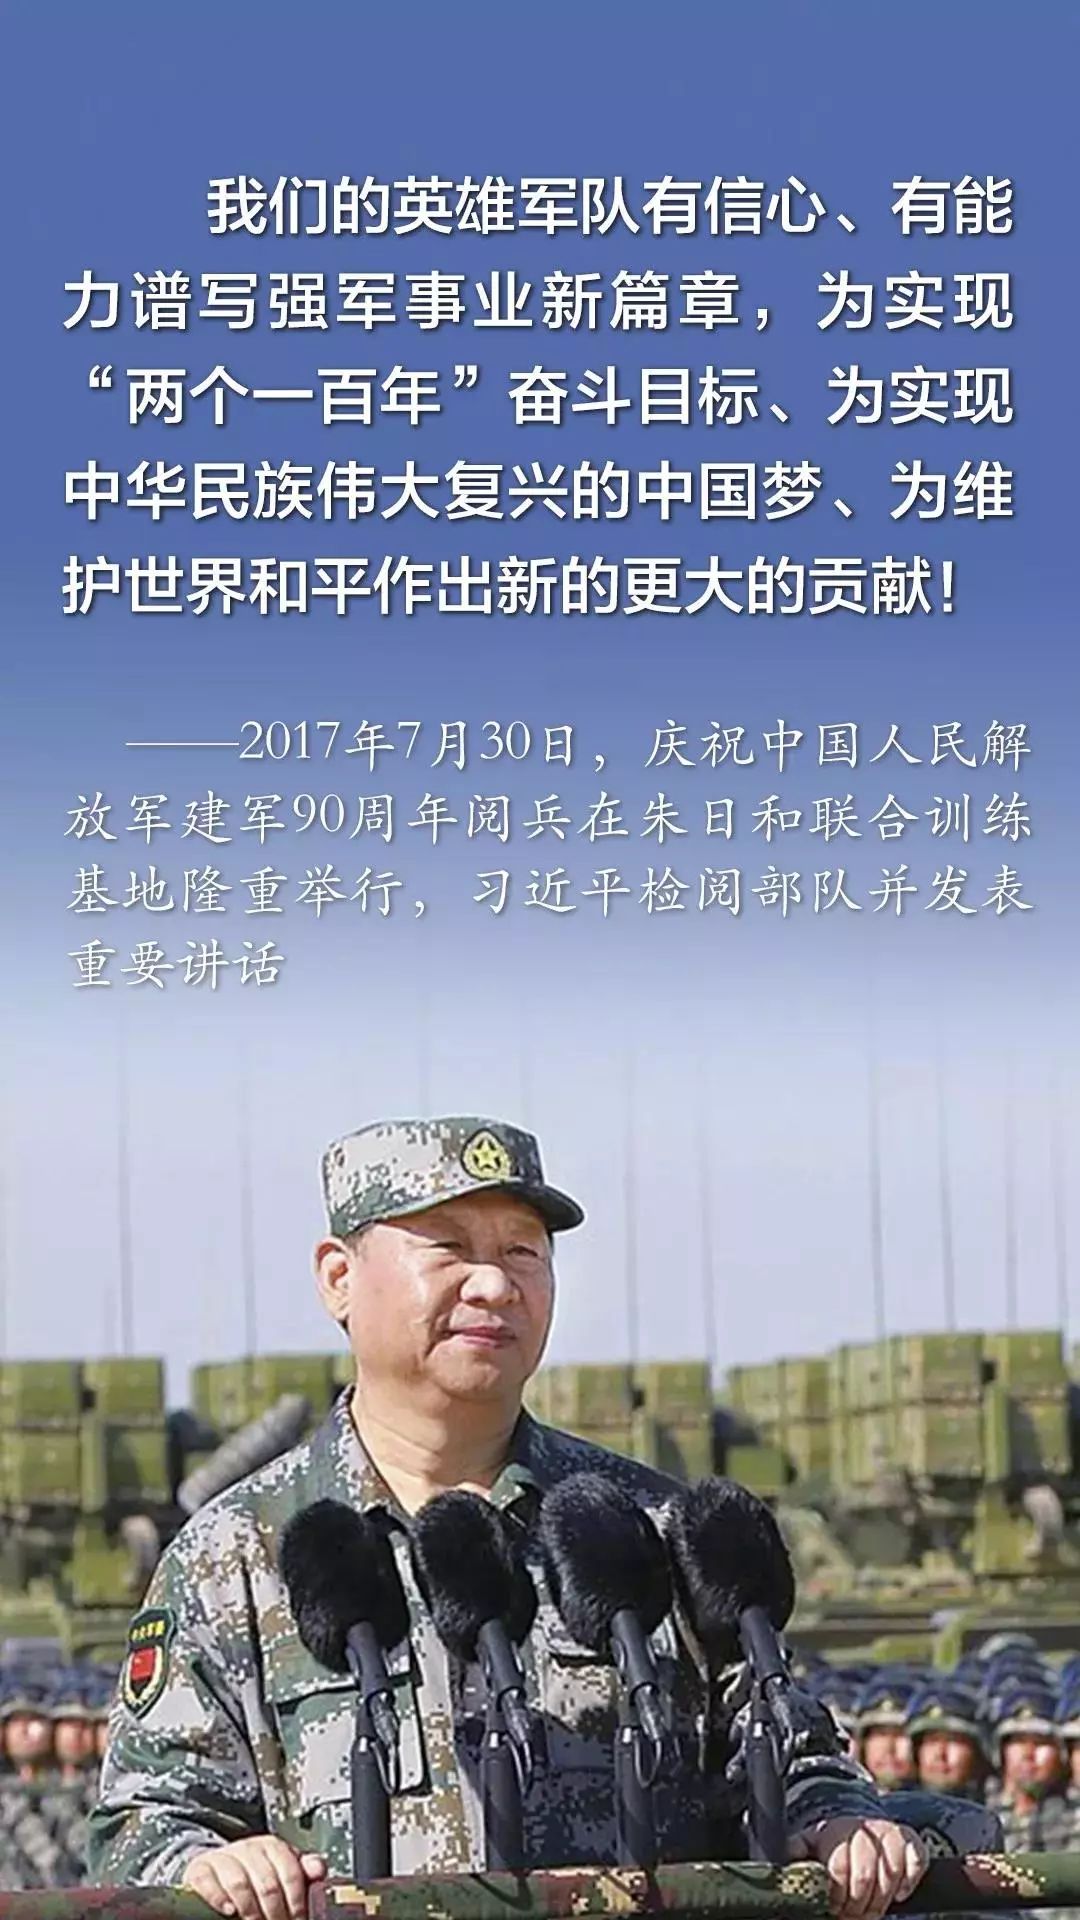 征兵季 退伍老兵拍摄超燃海报喊你参军 - 中国军网